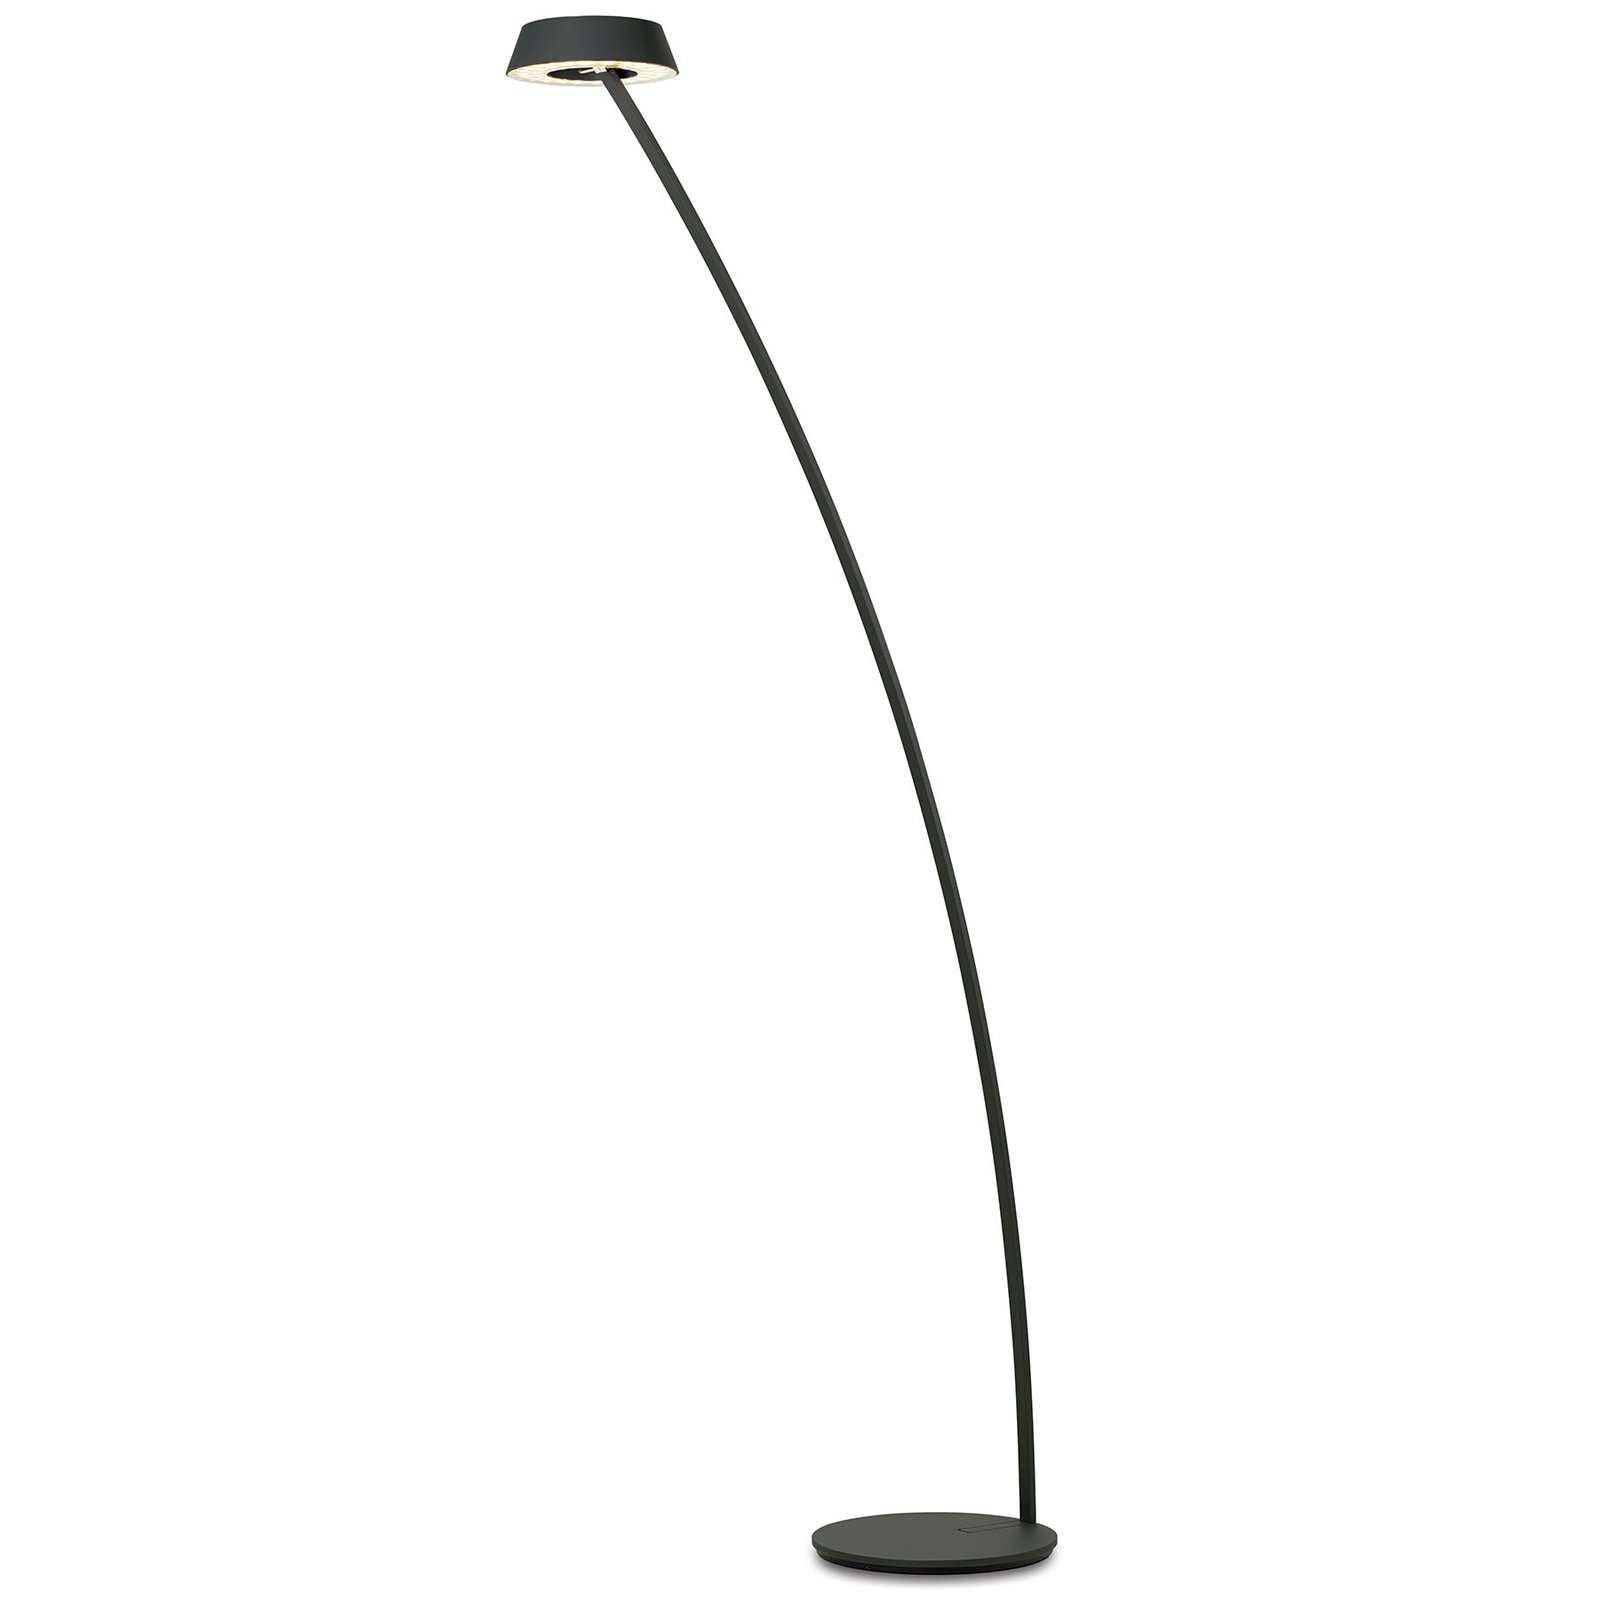 OLIGO Glance LED floor lamp curved matt black